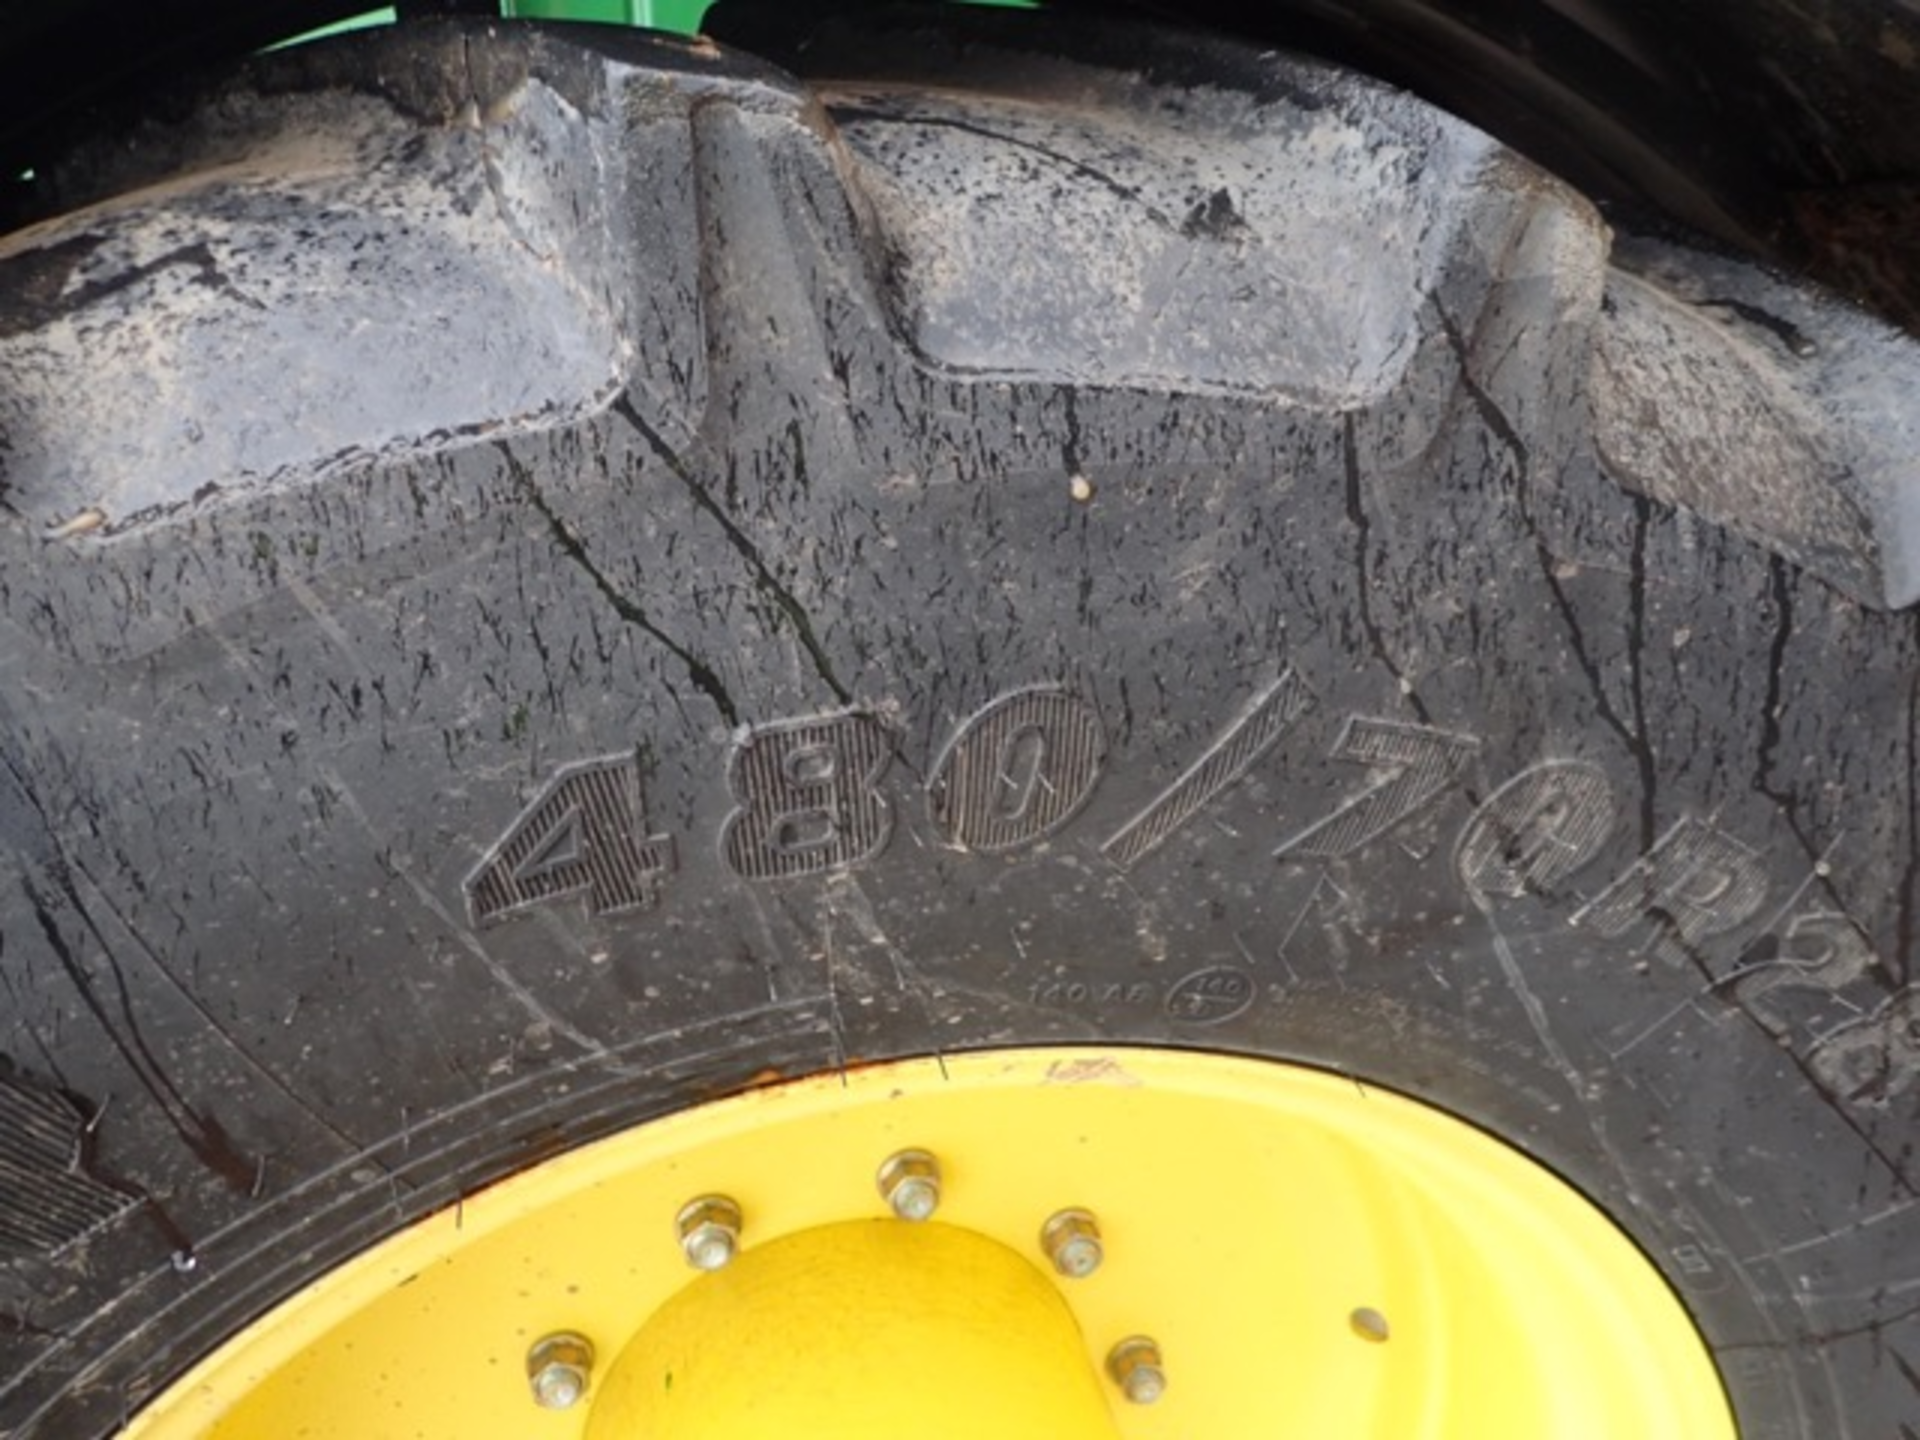 John Deere 640R 4WD tractor Registration Number: DX13 FLK Date of Registration: 30/05/2013 - Image 13 of 16